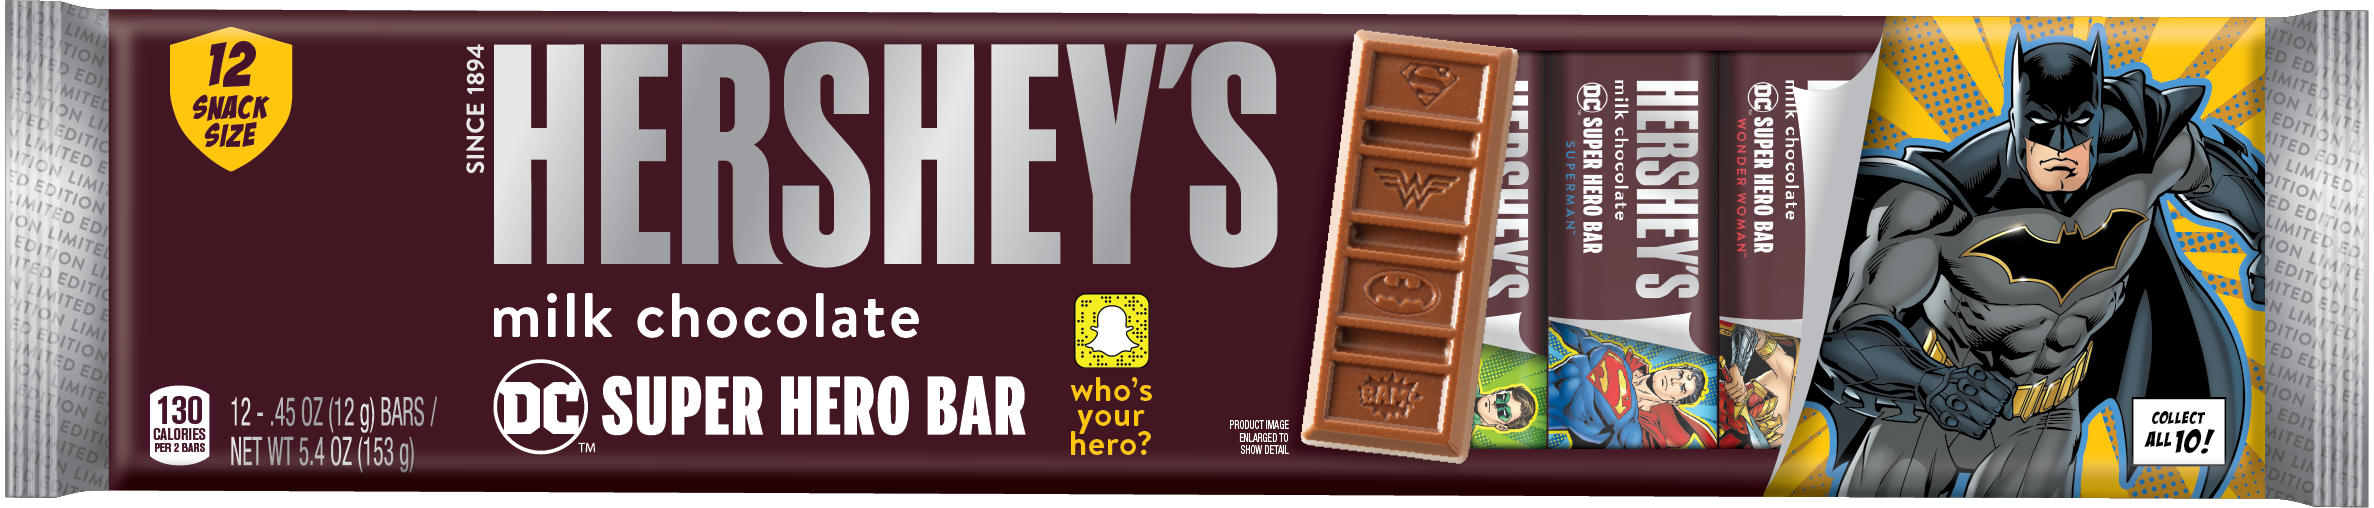 Hershey Batman milk chocolate bar